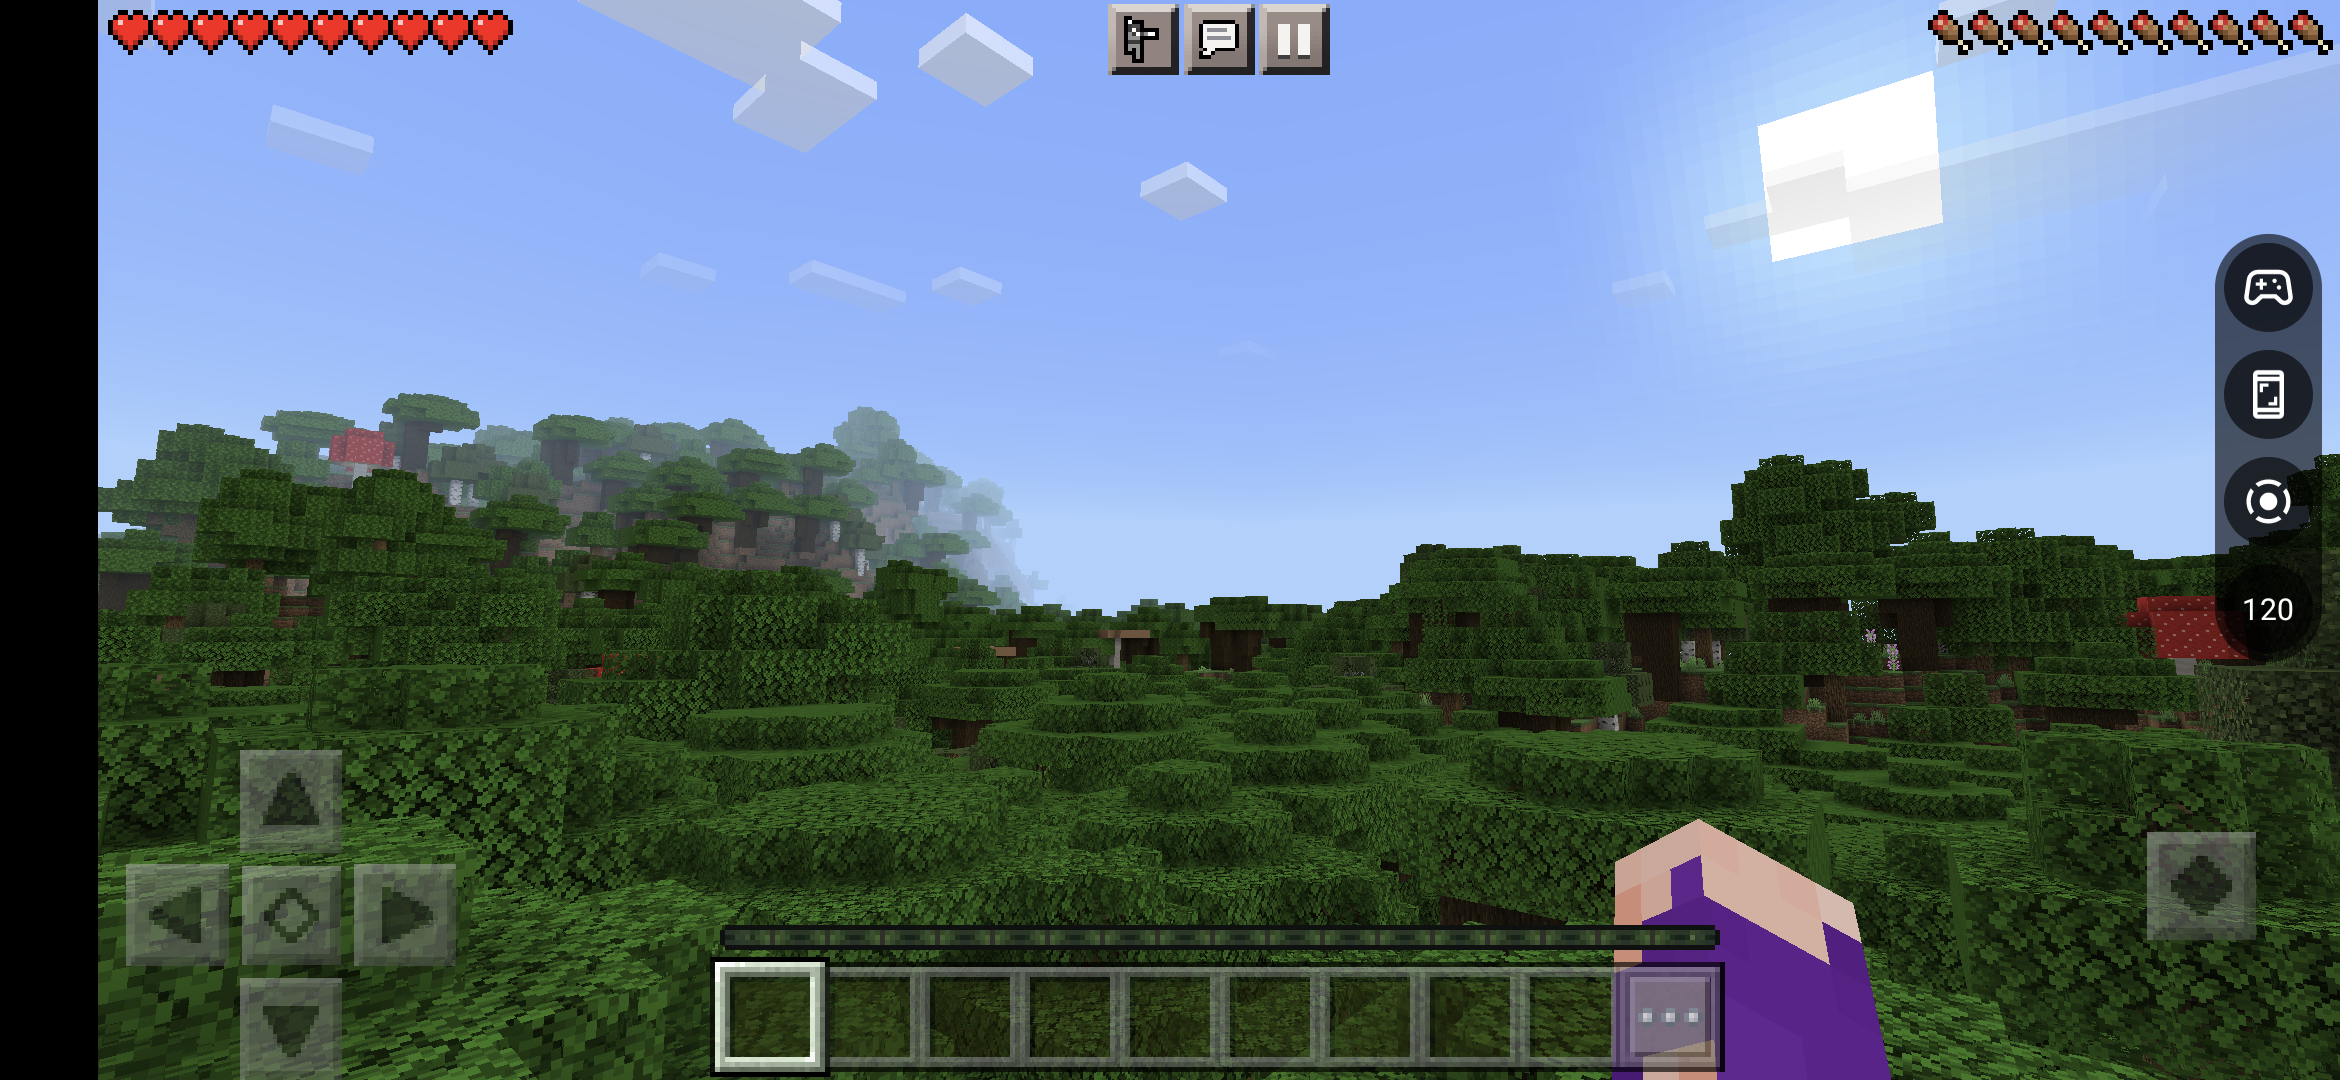 Captura de pantalla del menú móvil del tablero del juego en Minecraft para Android.